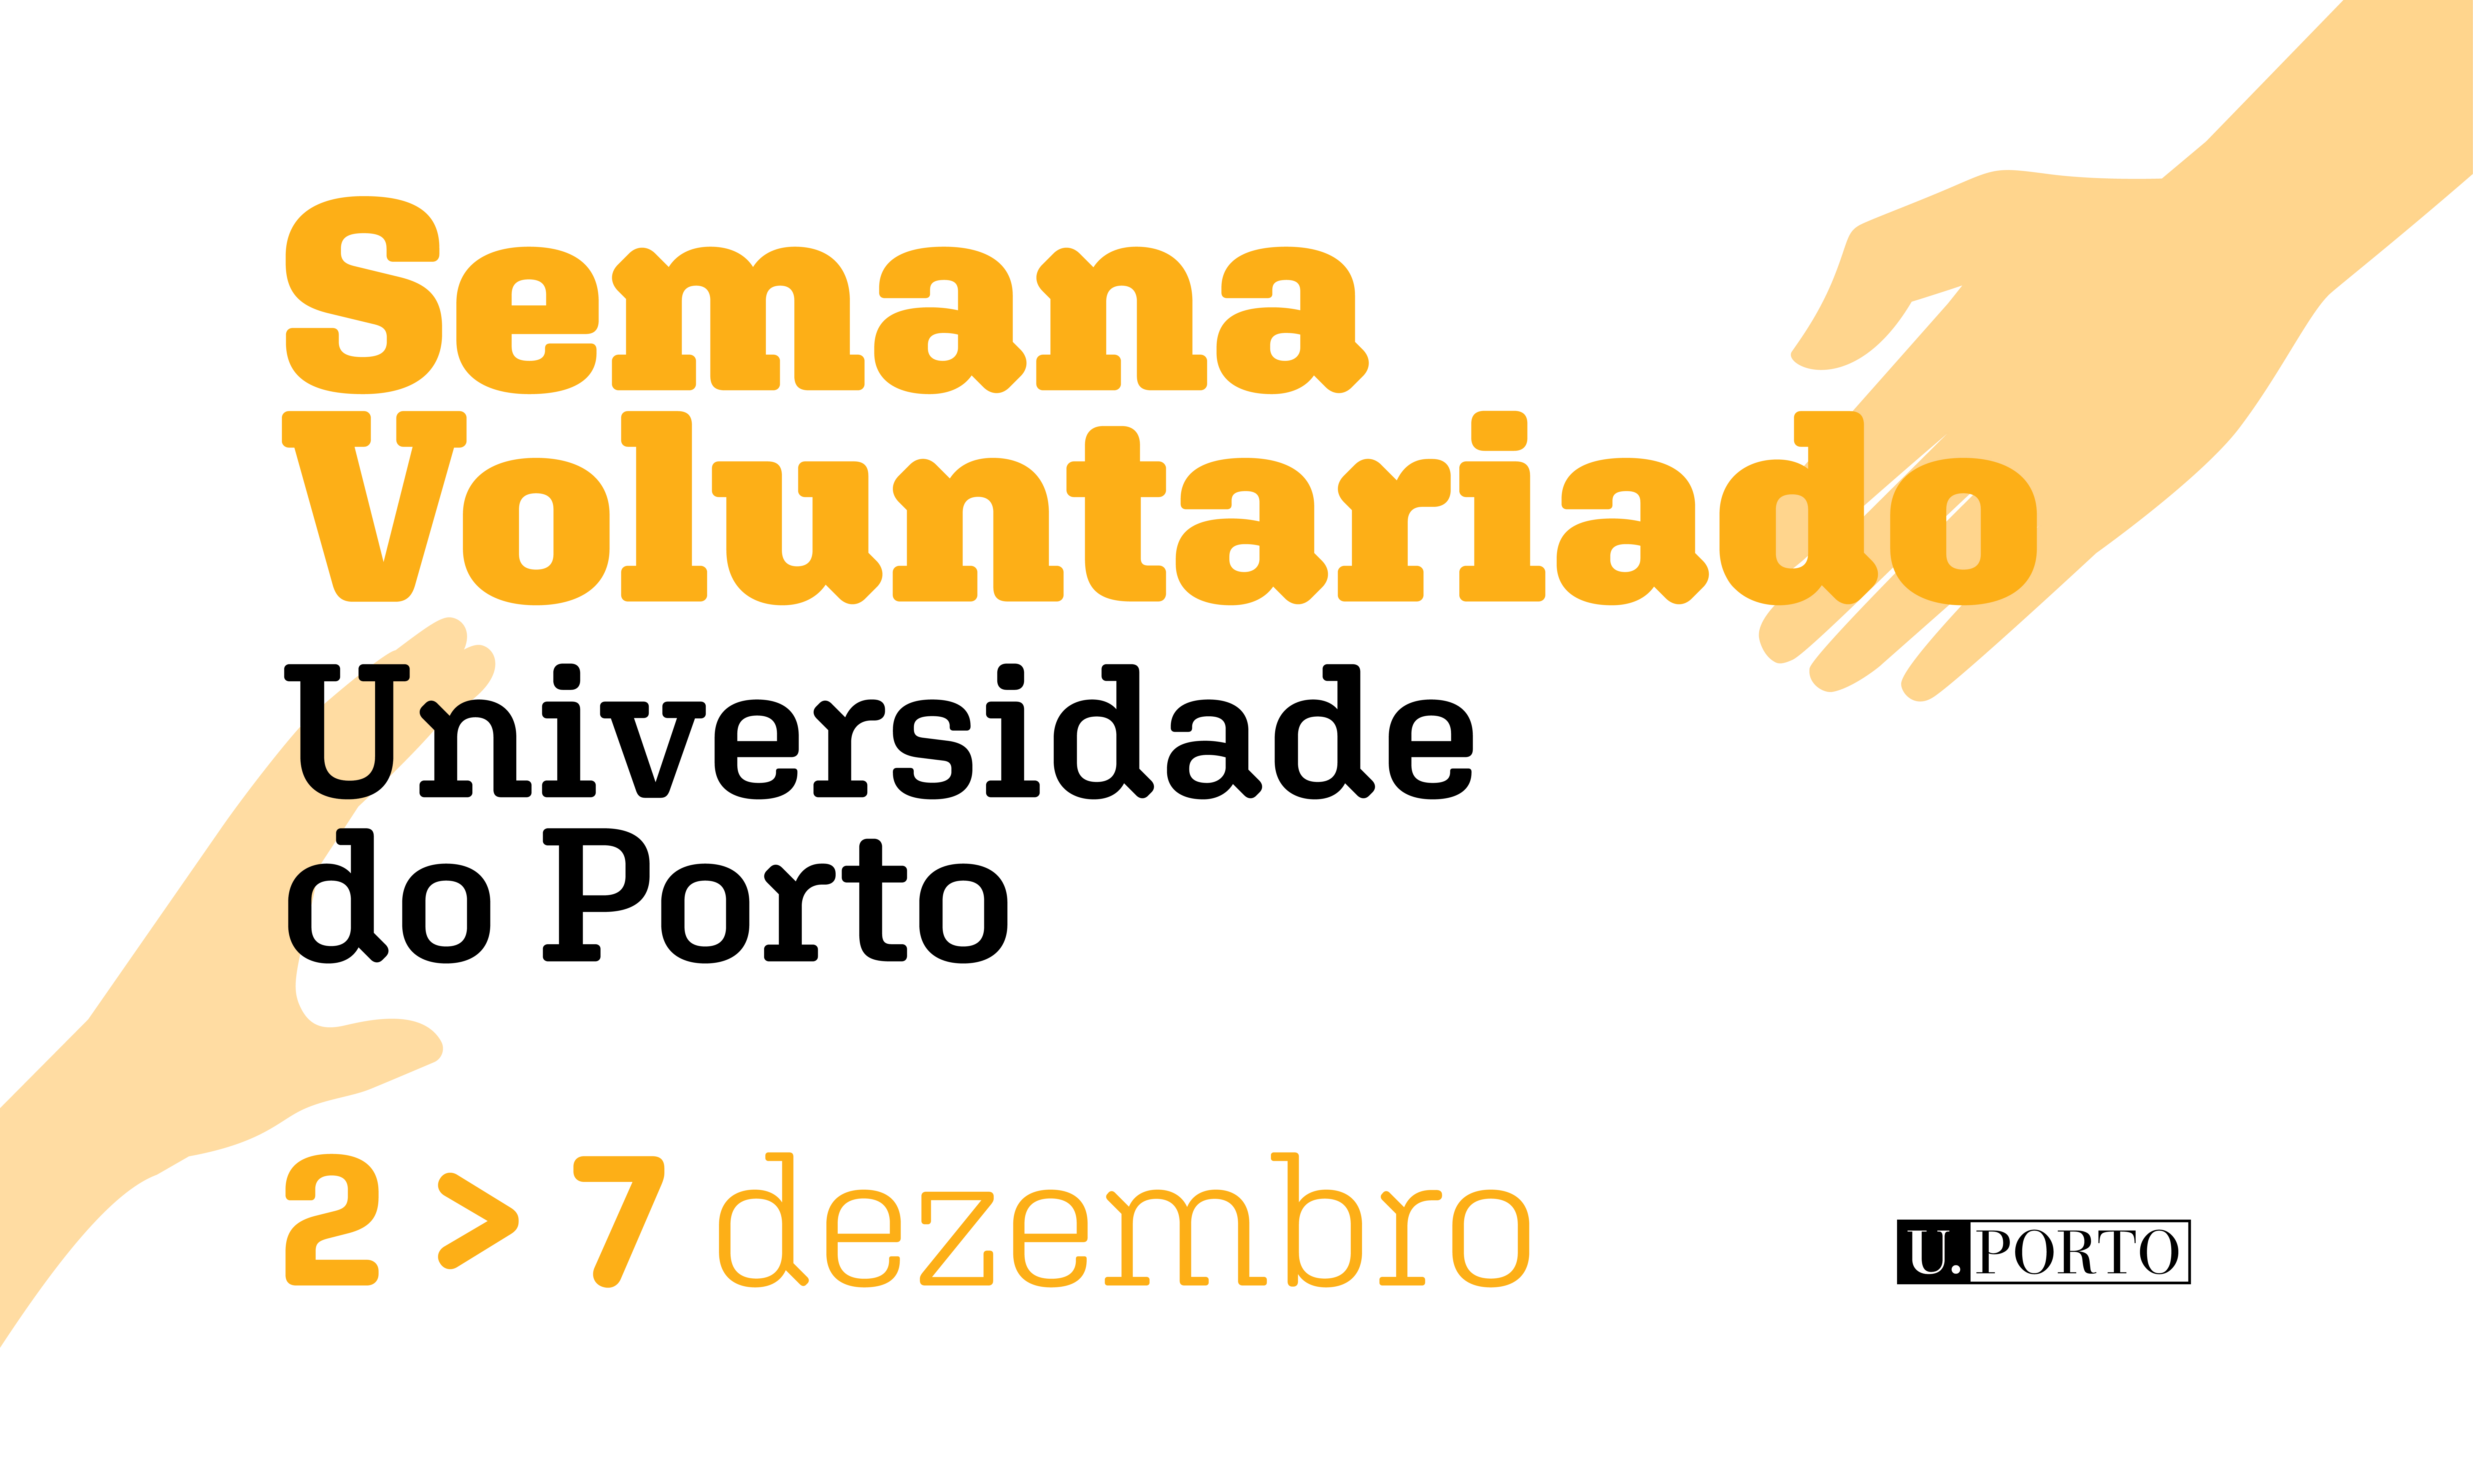 Semana do Voluntariado | Universidade do Porto